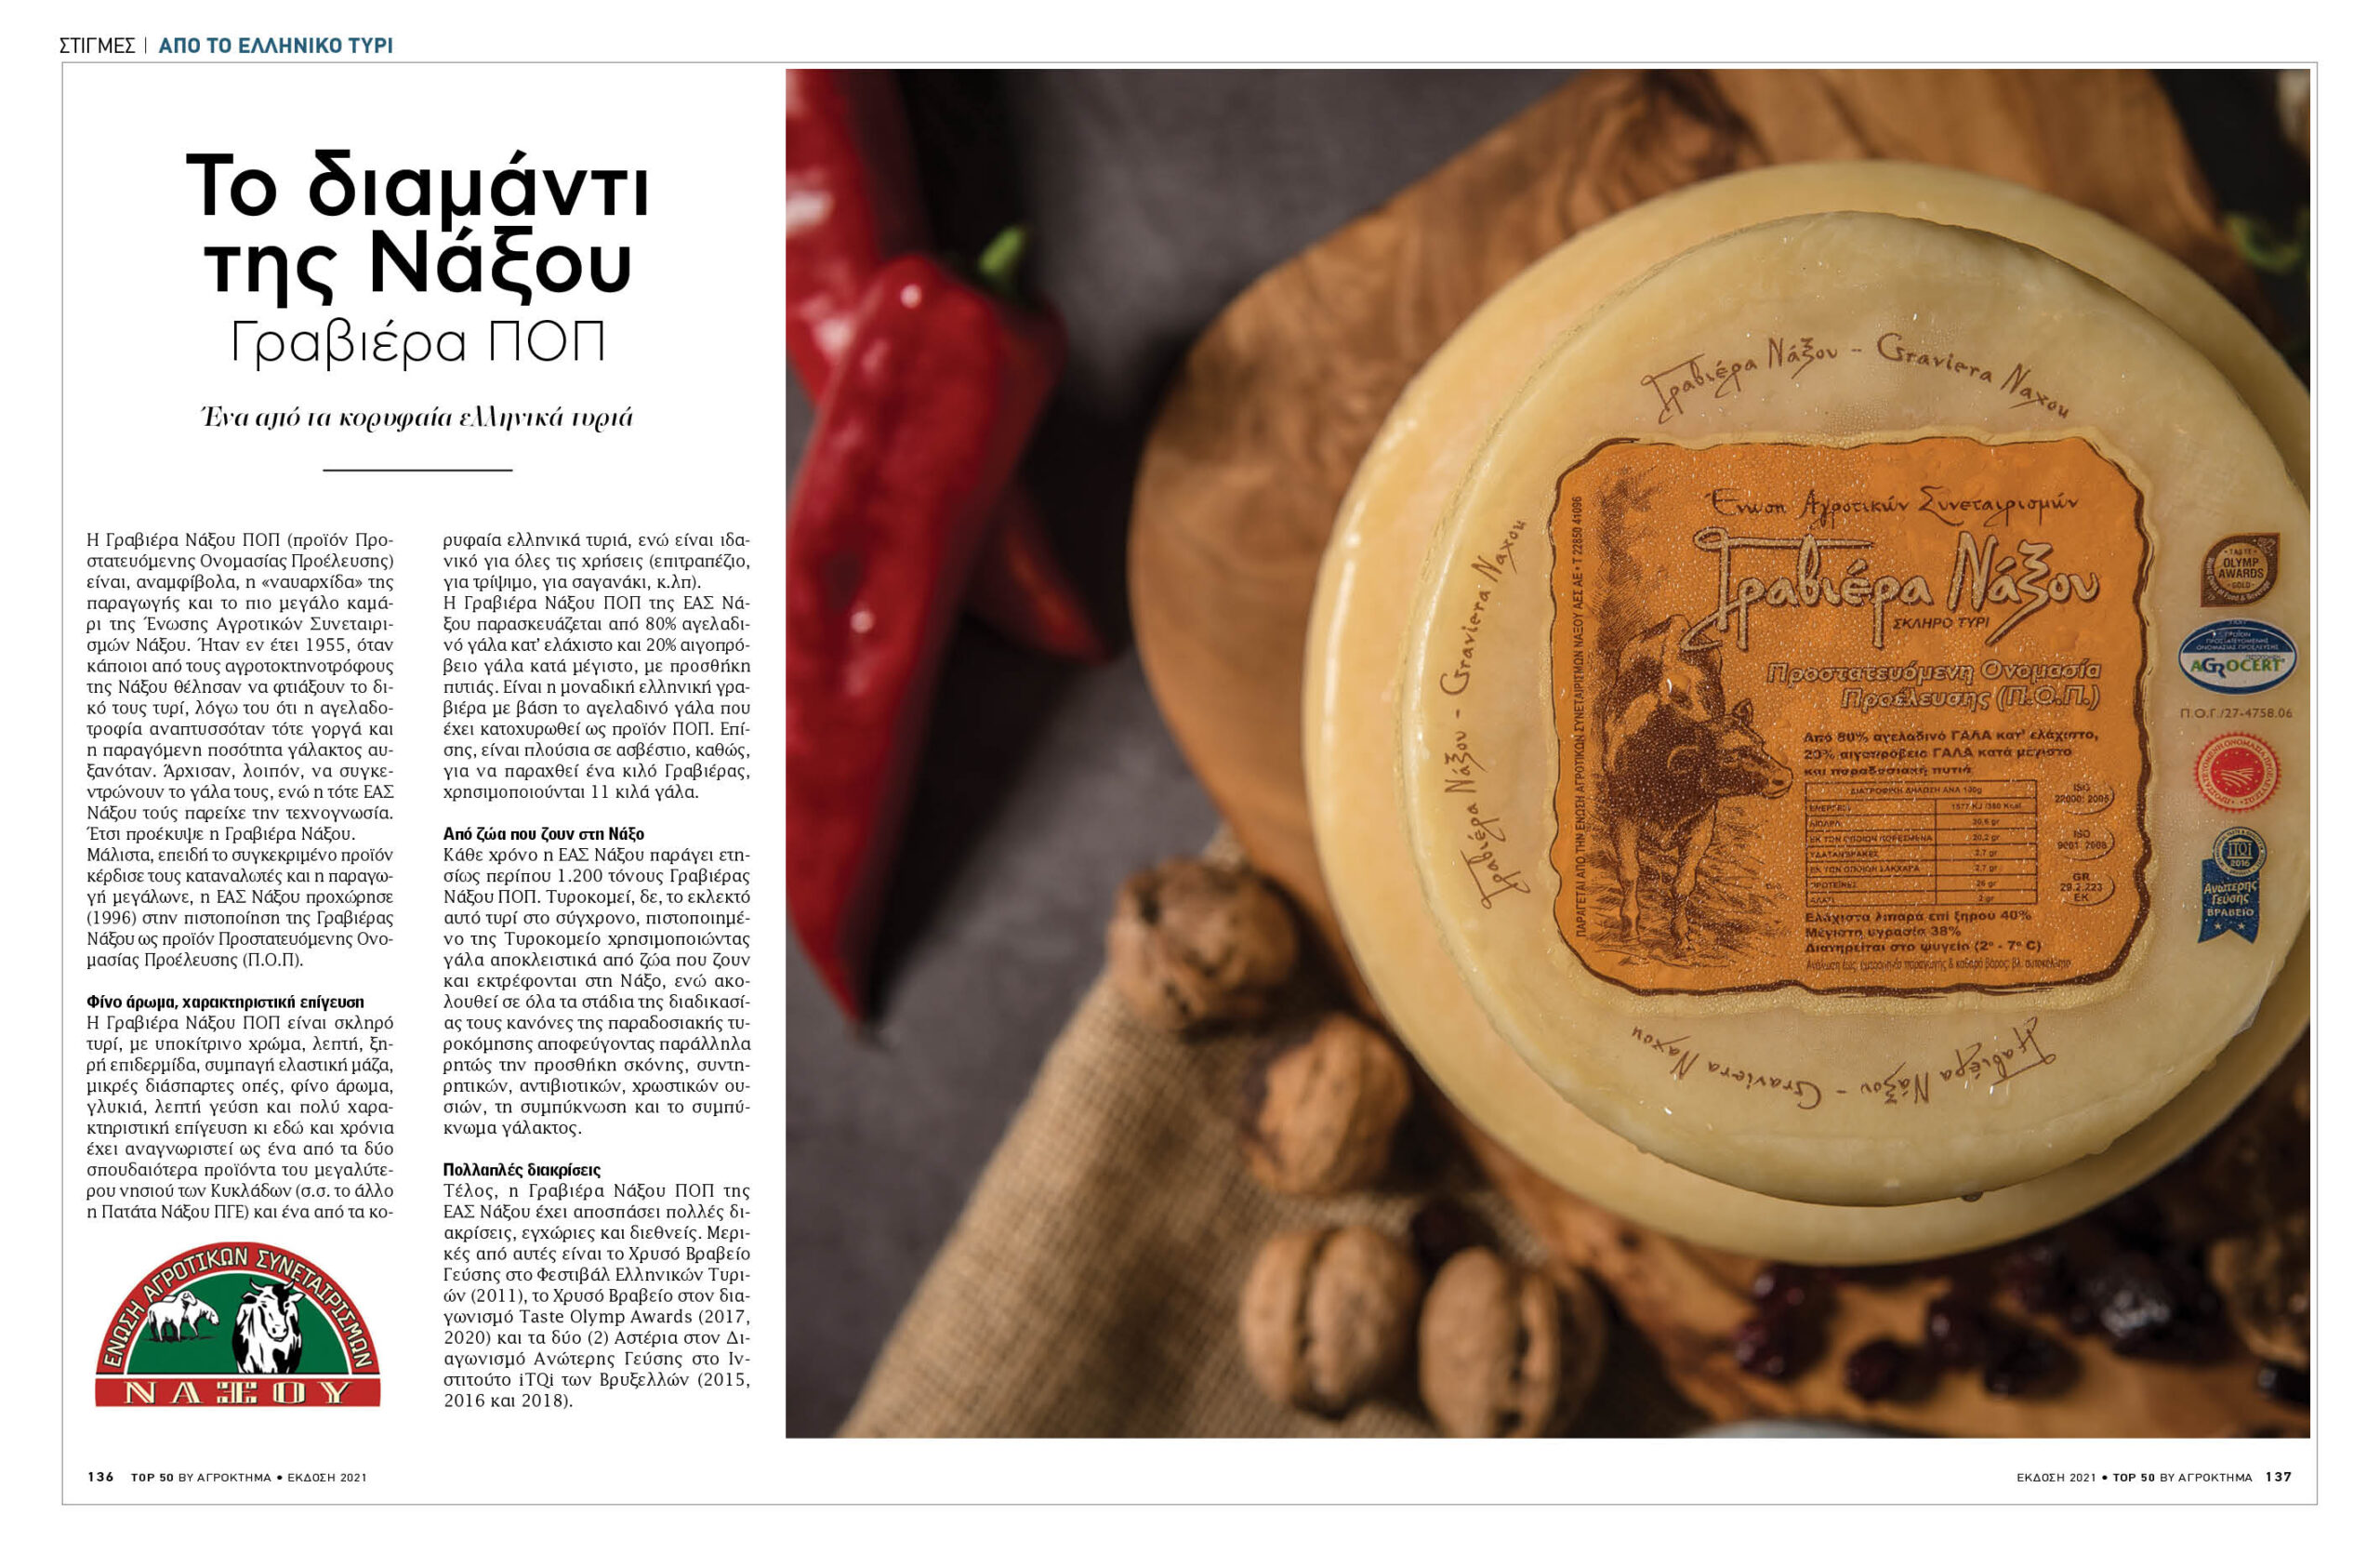 Το Ορεινό της Ε.Α.Σ. Νάξου στα Top 50 ελληνικά τυριά!